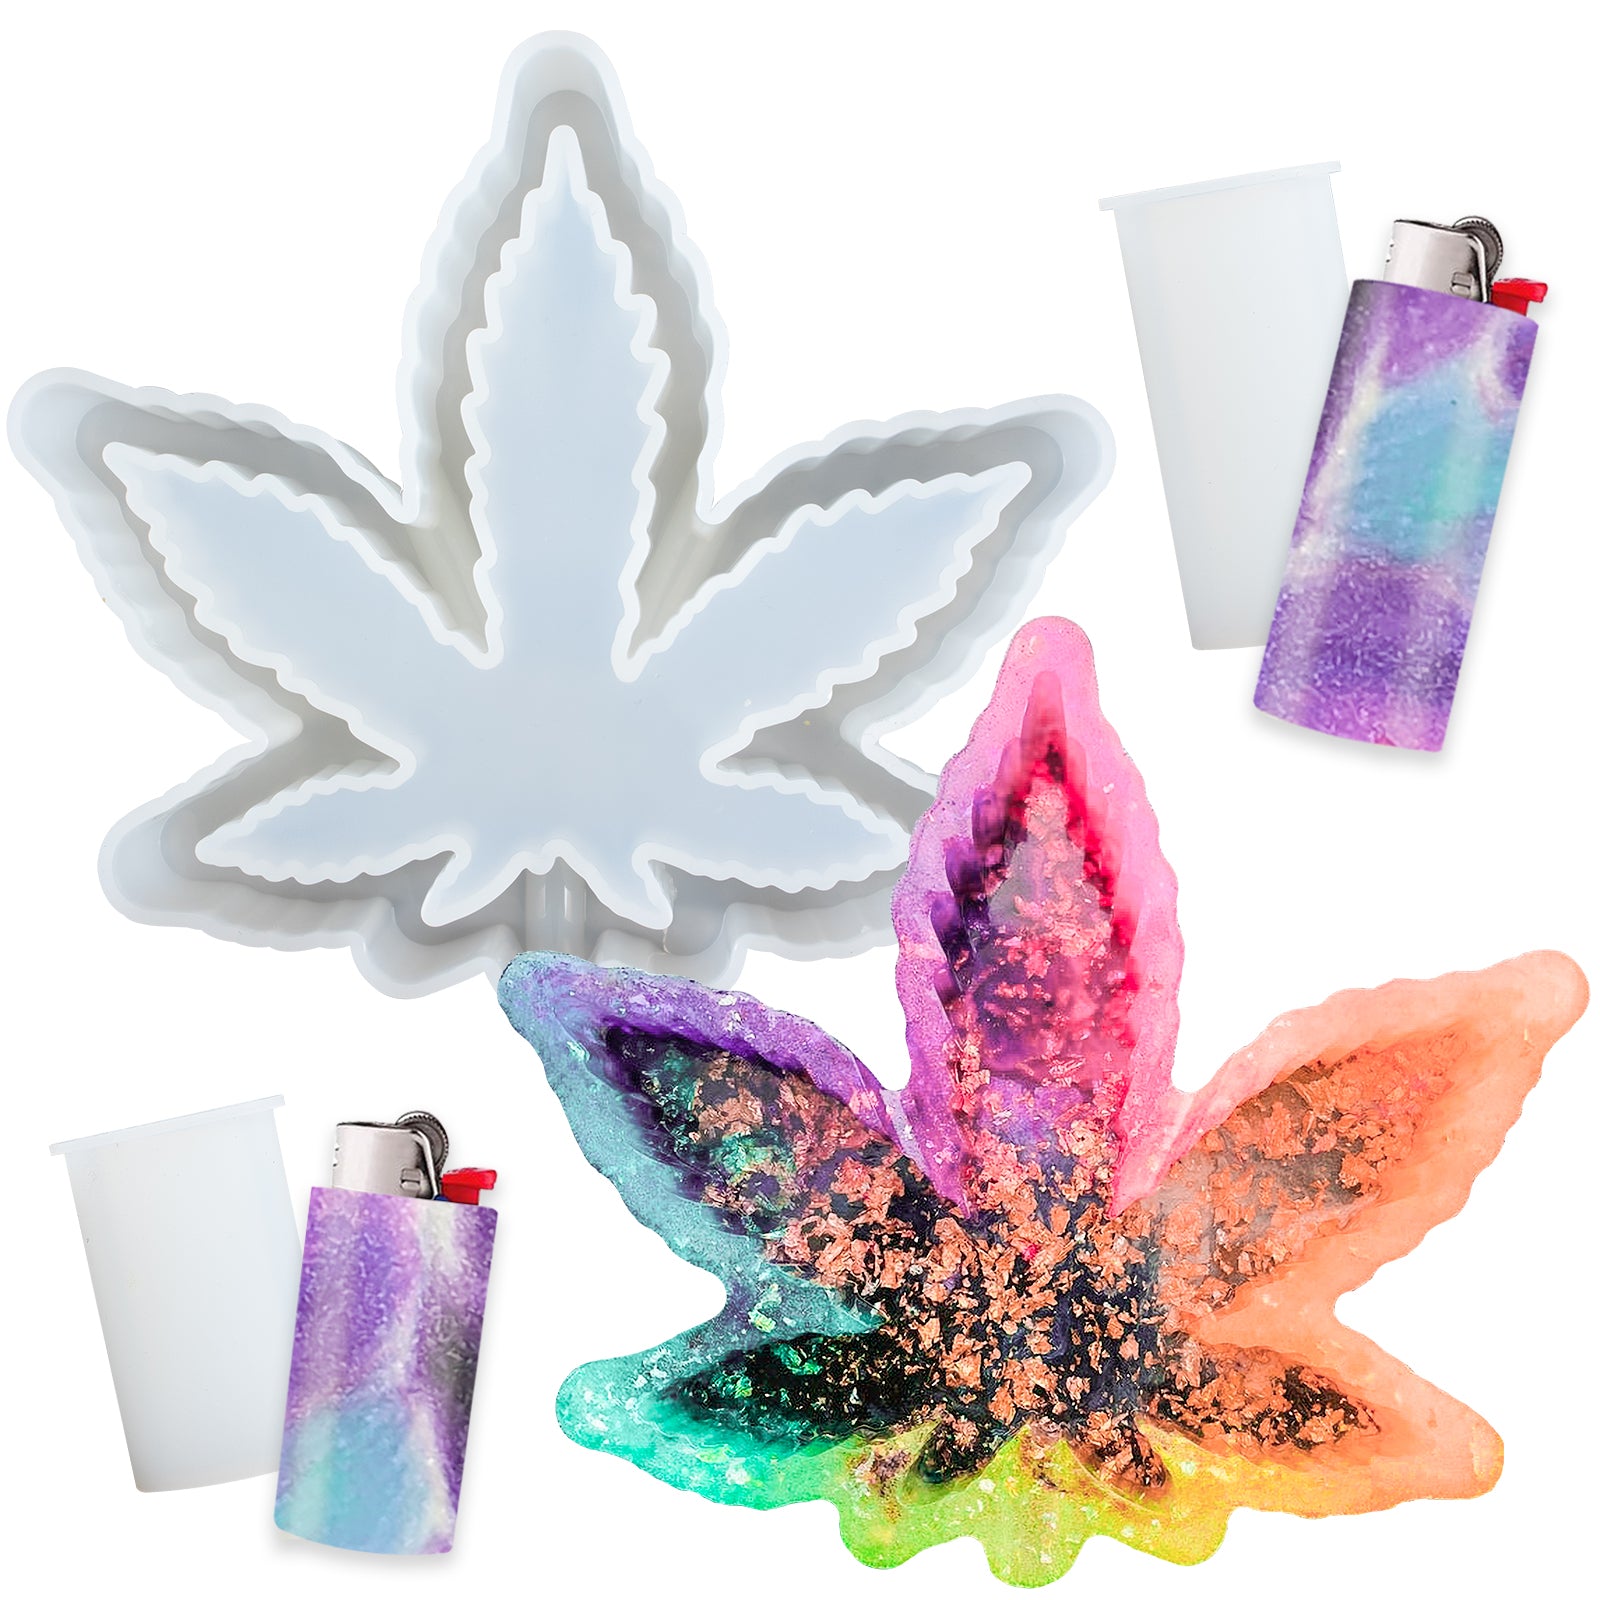 Funshowcase Marijuana Weed Leaf Ashtray and Lighter Cover Silicone Molds Set